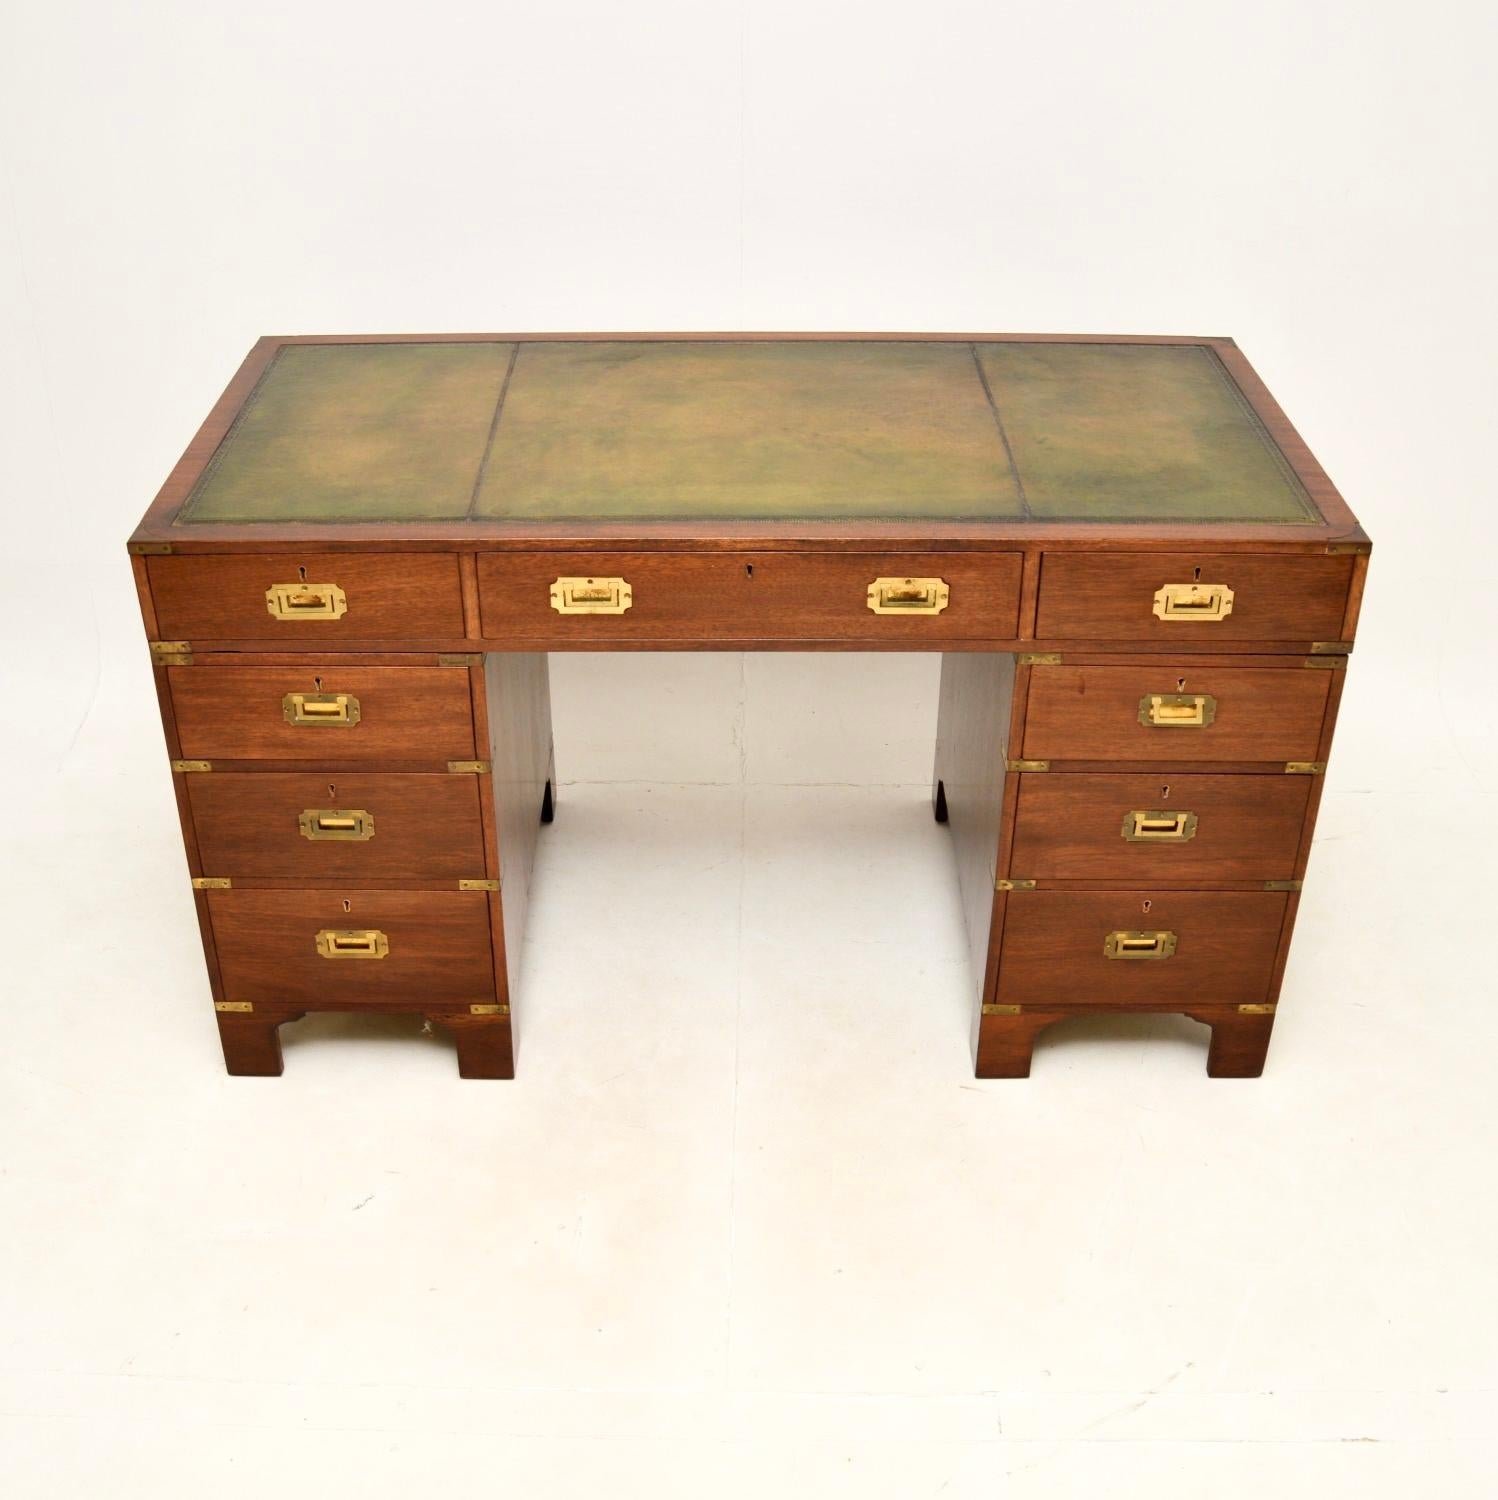 Ein hochwertiger antiker Schreibtisch im Stil einer Militärkampagne. Es wurde in England hergestellt und stammt etwa aus den 1930er Jahren.

Er ist sehr gut verarbeitet und hat ein nützliches und elegantes Design. Das Holz hat einen schönen Farbton,